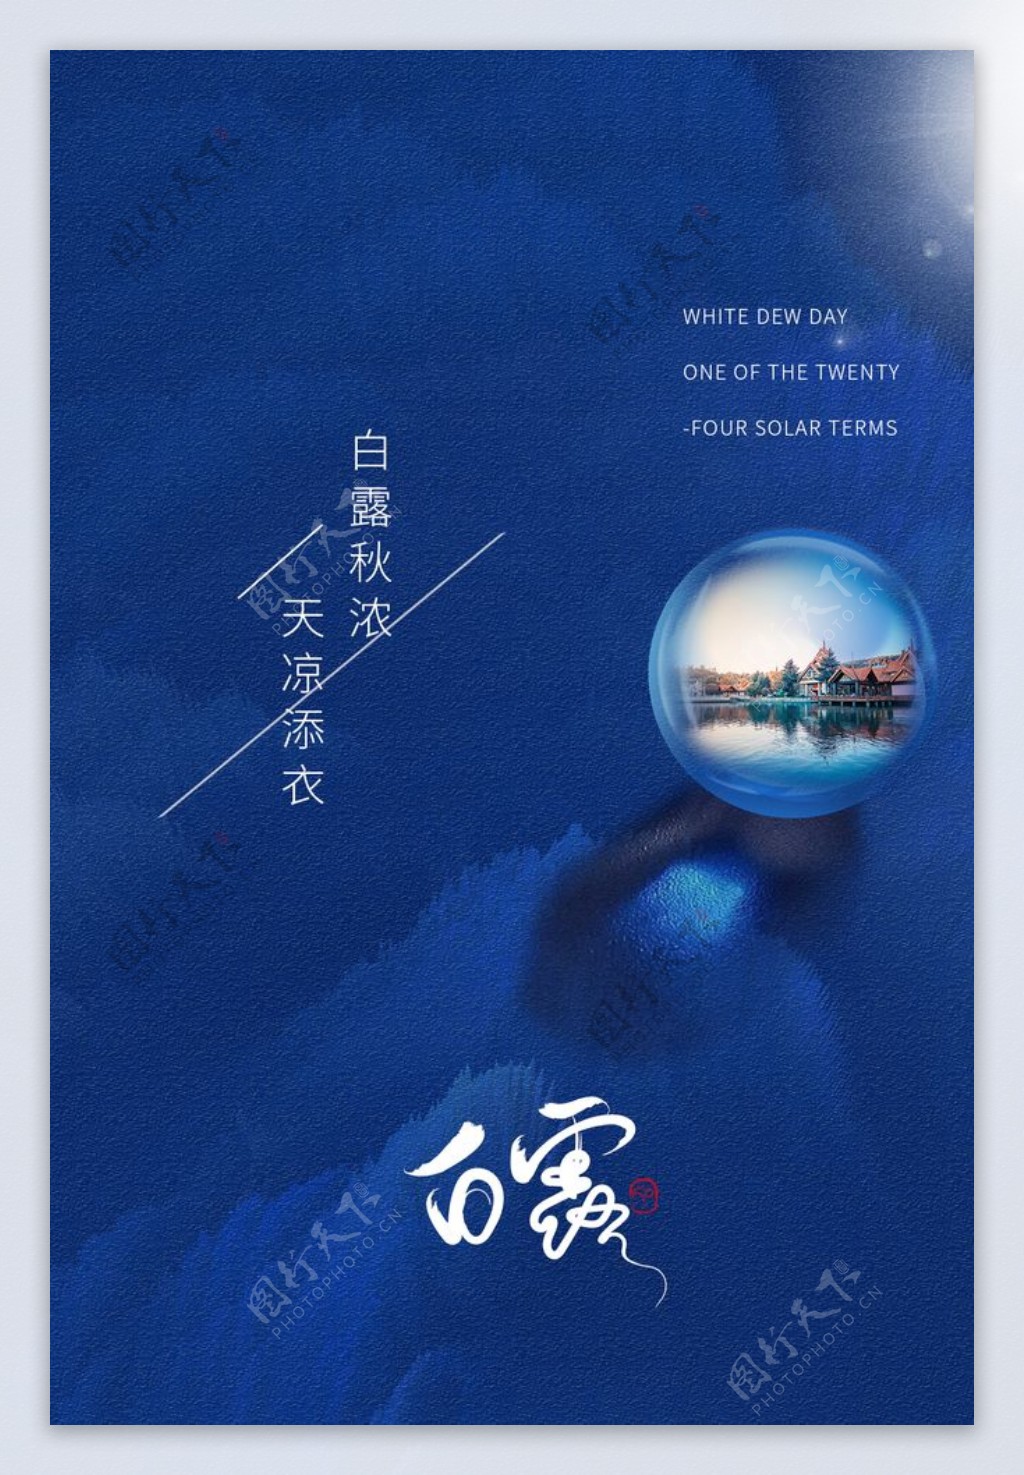 白露节日传统宣传海报素材